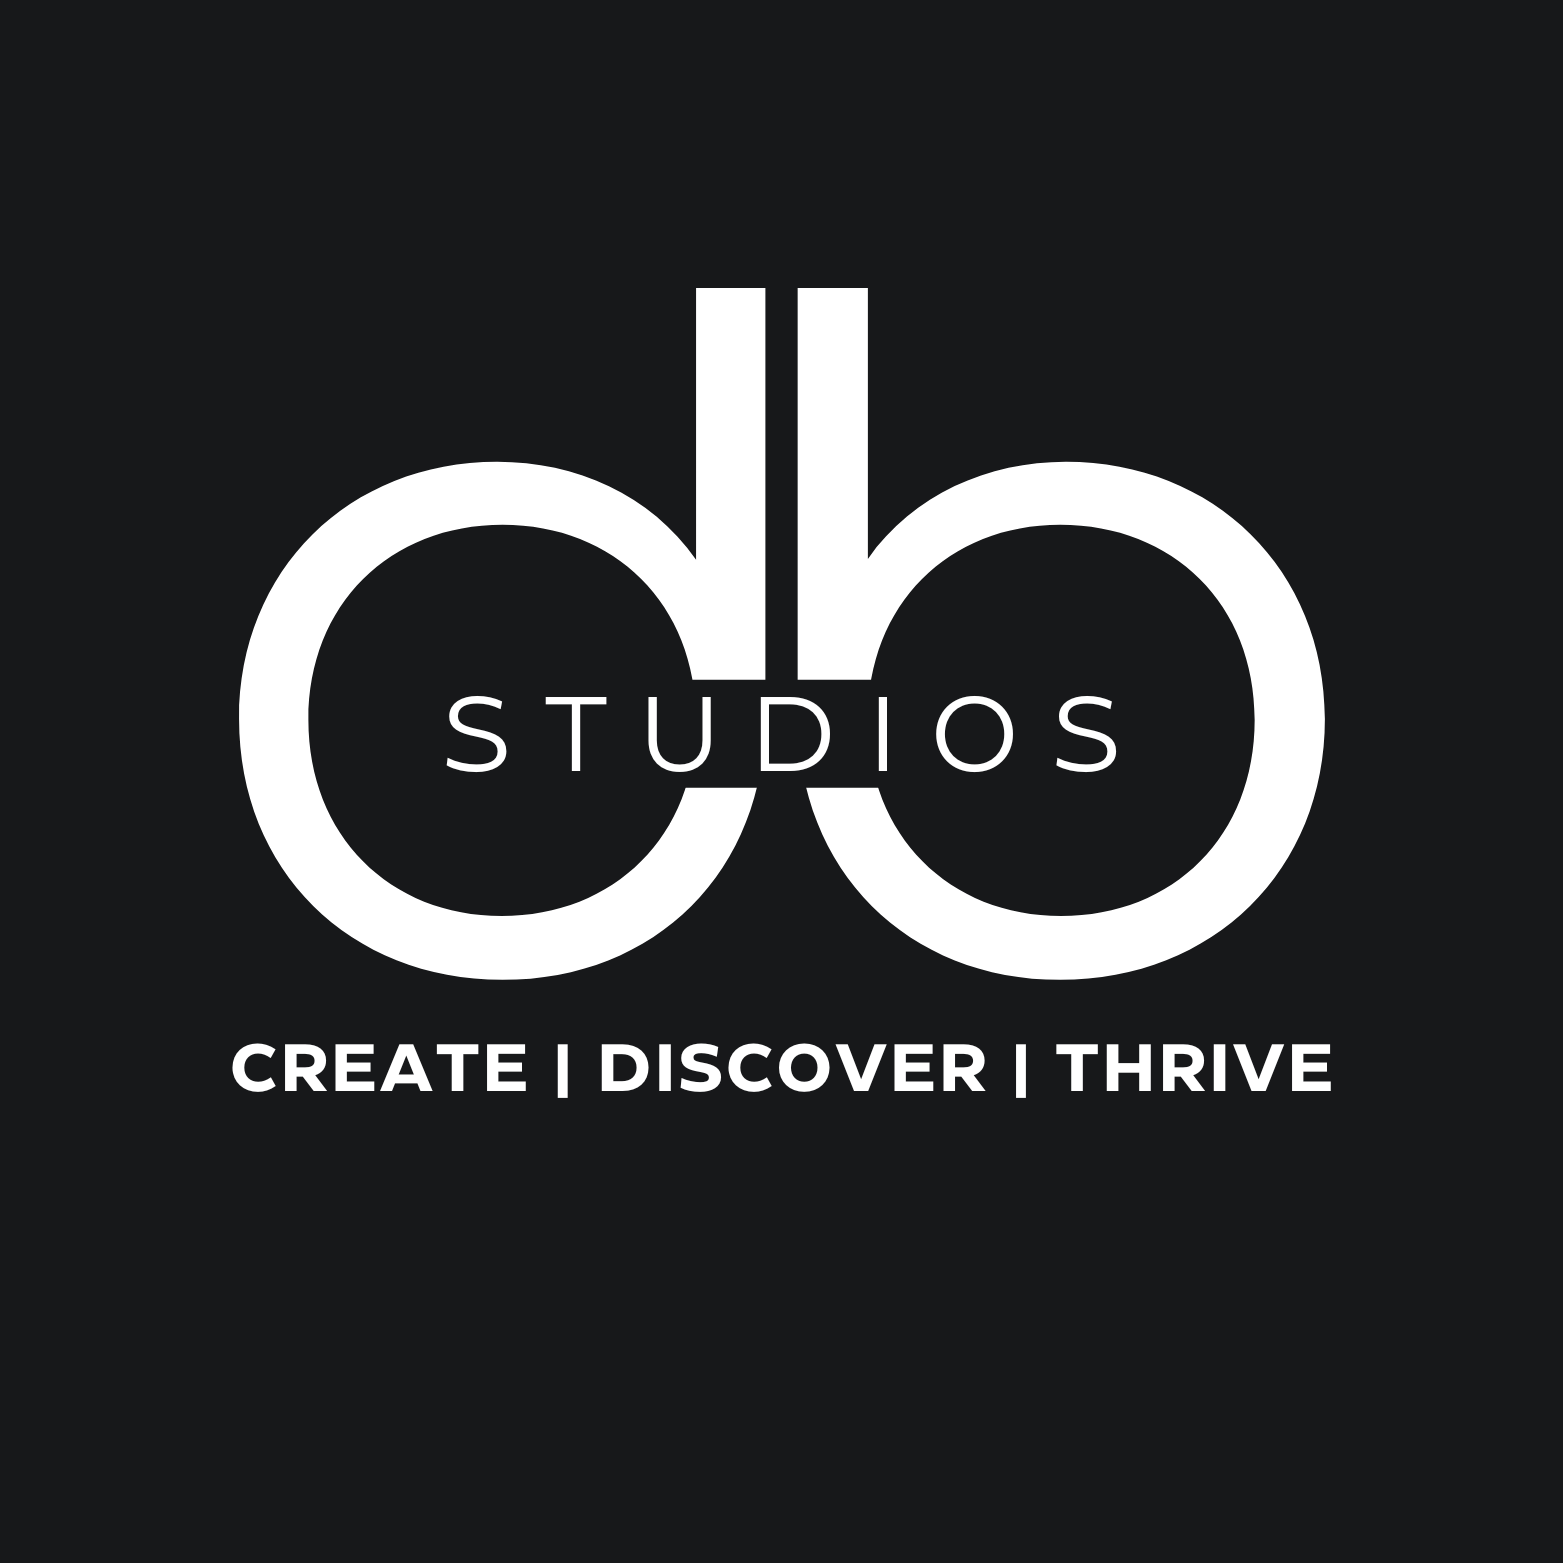 DB Studios